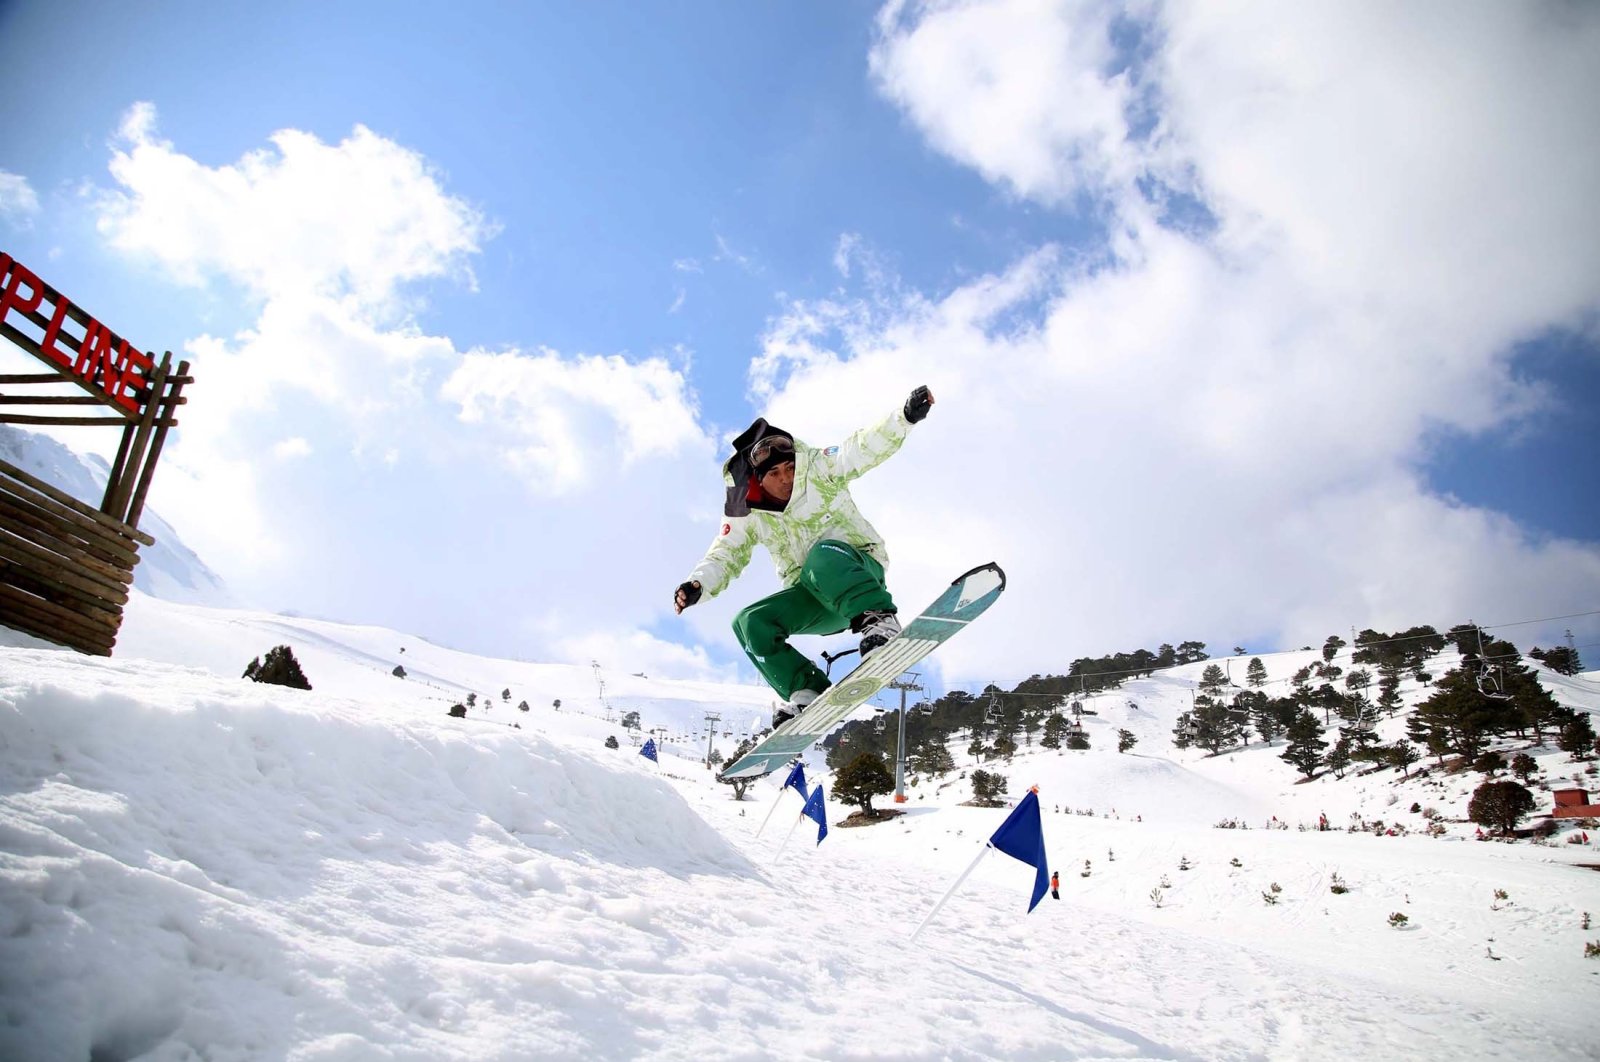 Jalur ski Erciyes, resor Uluda: Lereng ski terbaik di Turki